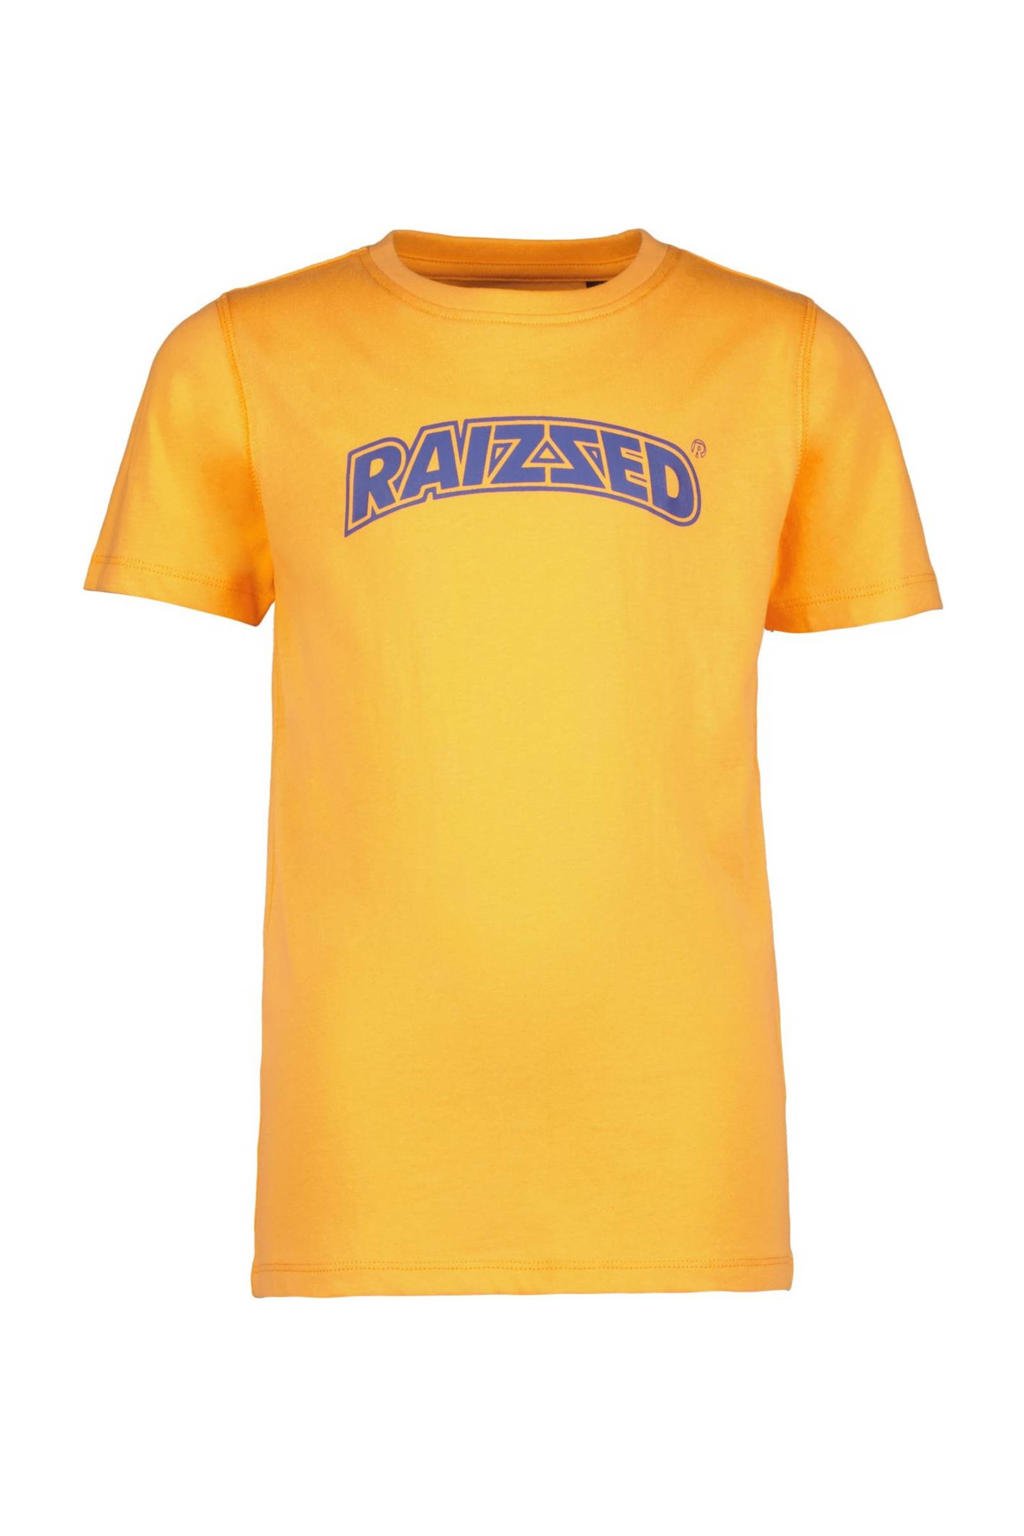 Oranje jongens Raizzed T-shirt Maynard van katoen met logo dessin, korte mouwen en ronde hals